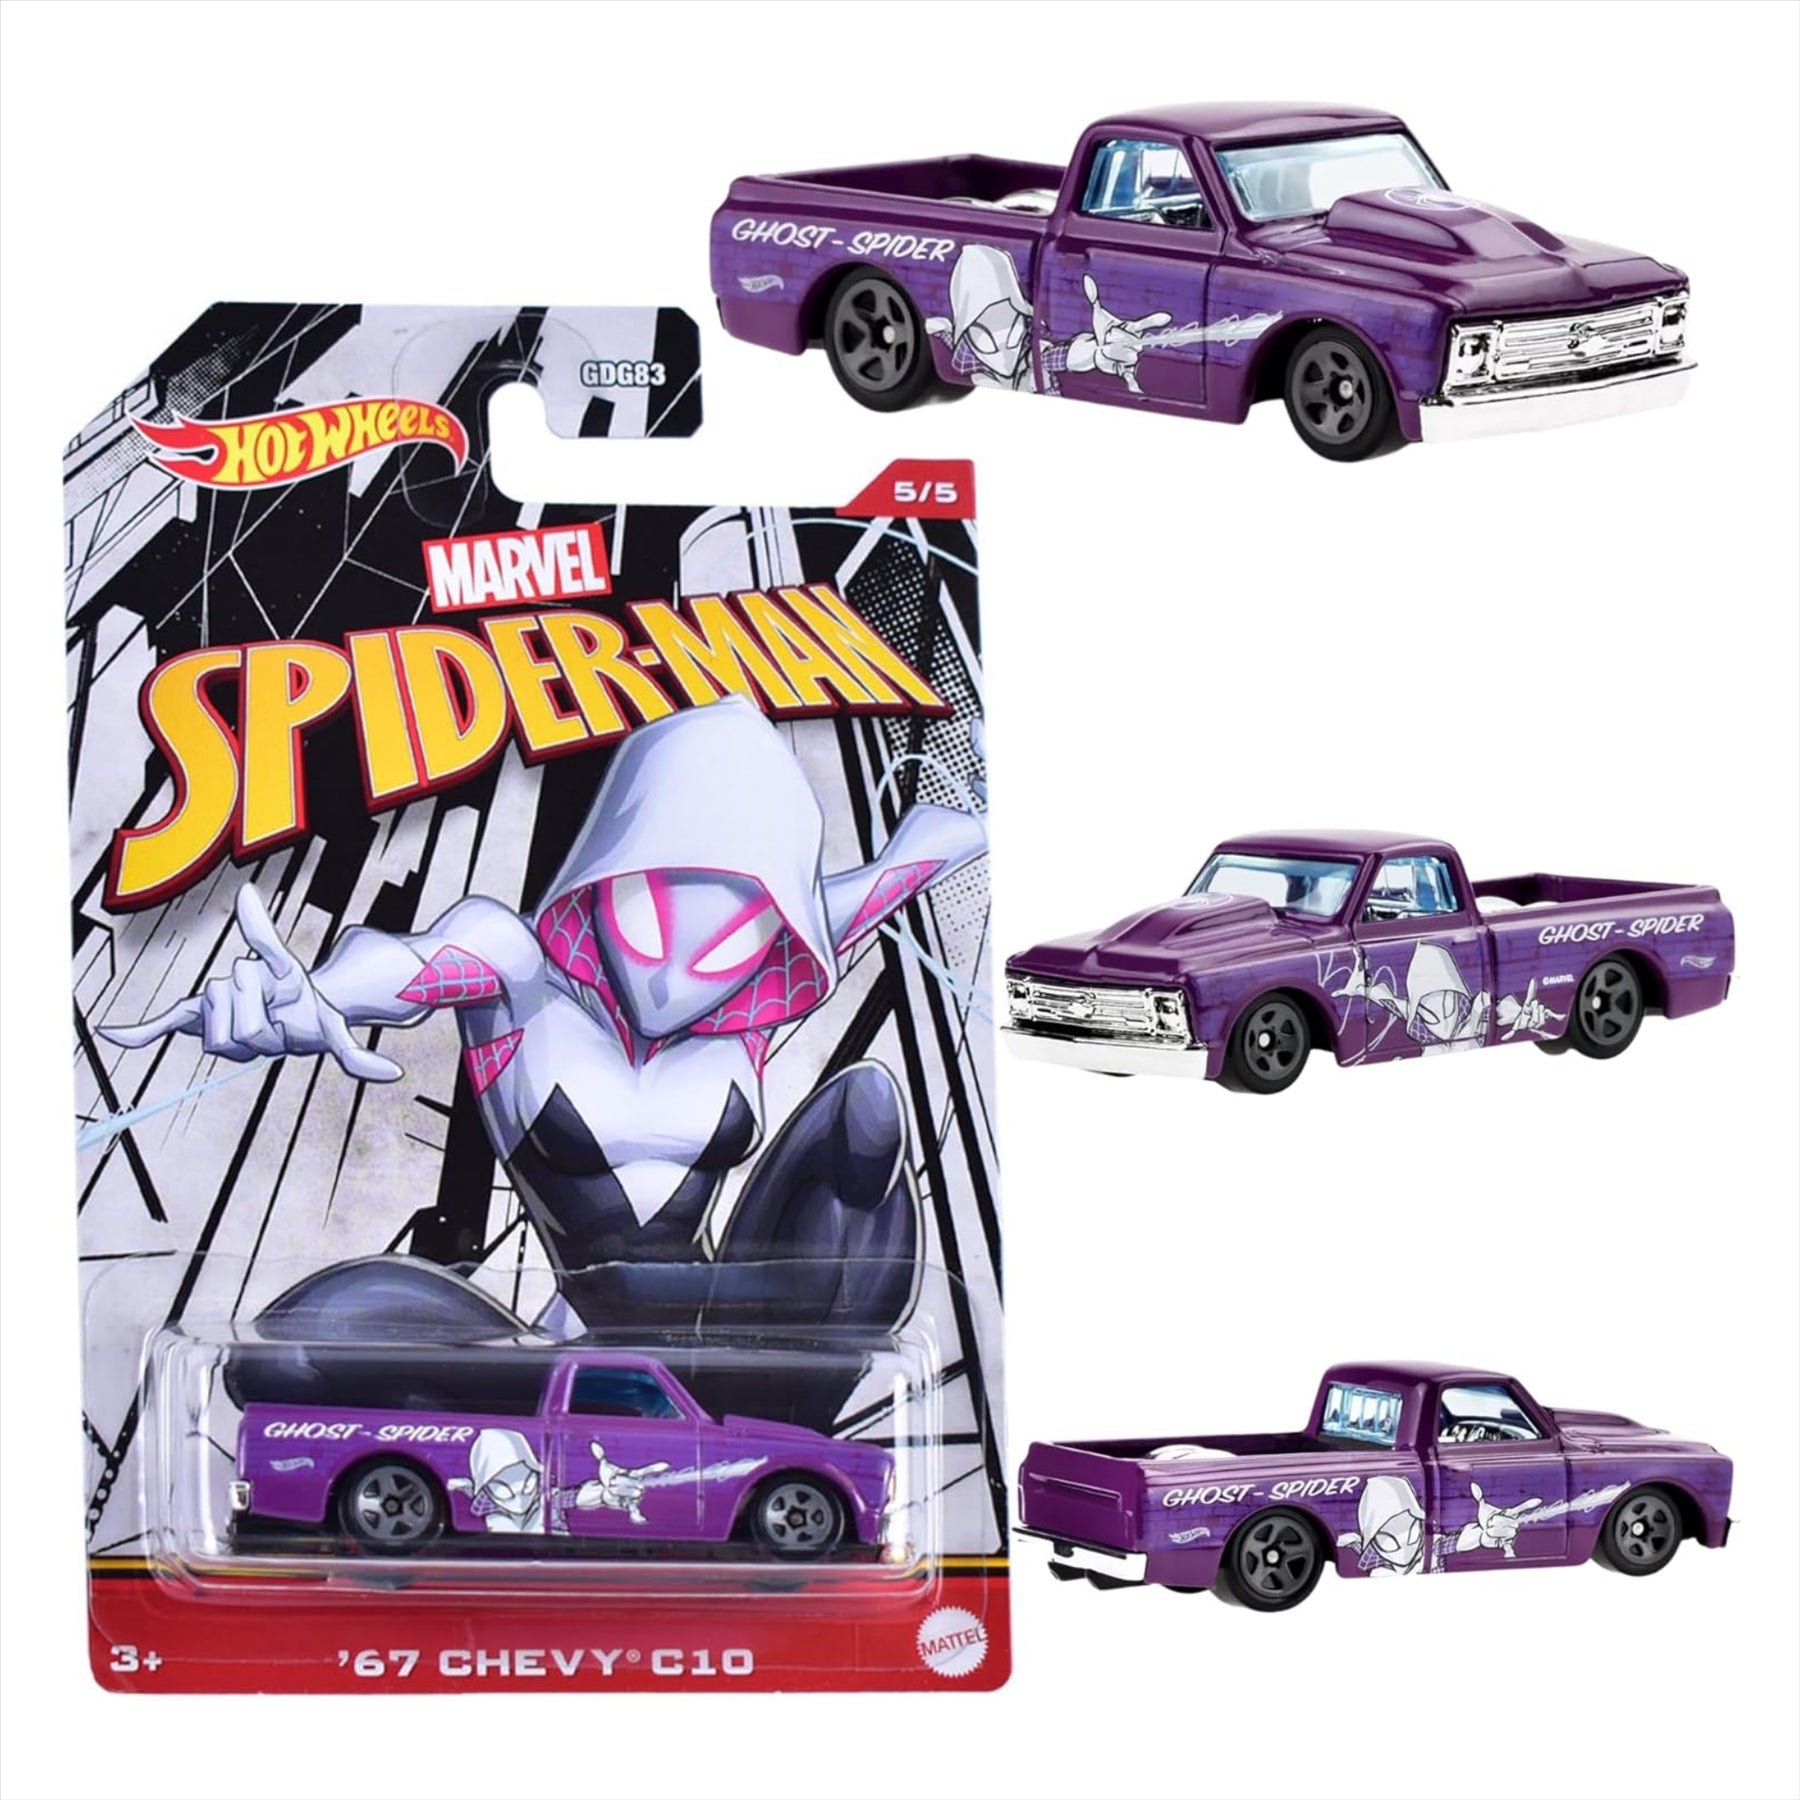 Hot Wheels Marvel Spider-Man - Ghost-Spider '67 Chevy C10 - 5/5 - Toptoys2u